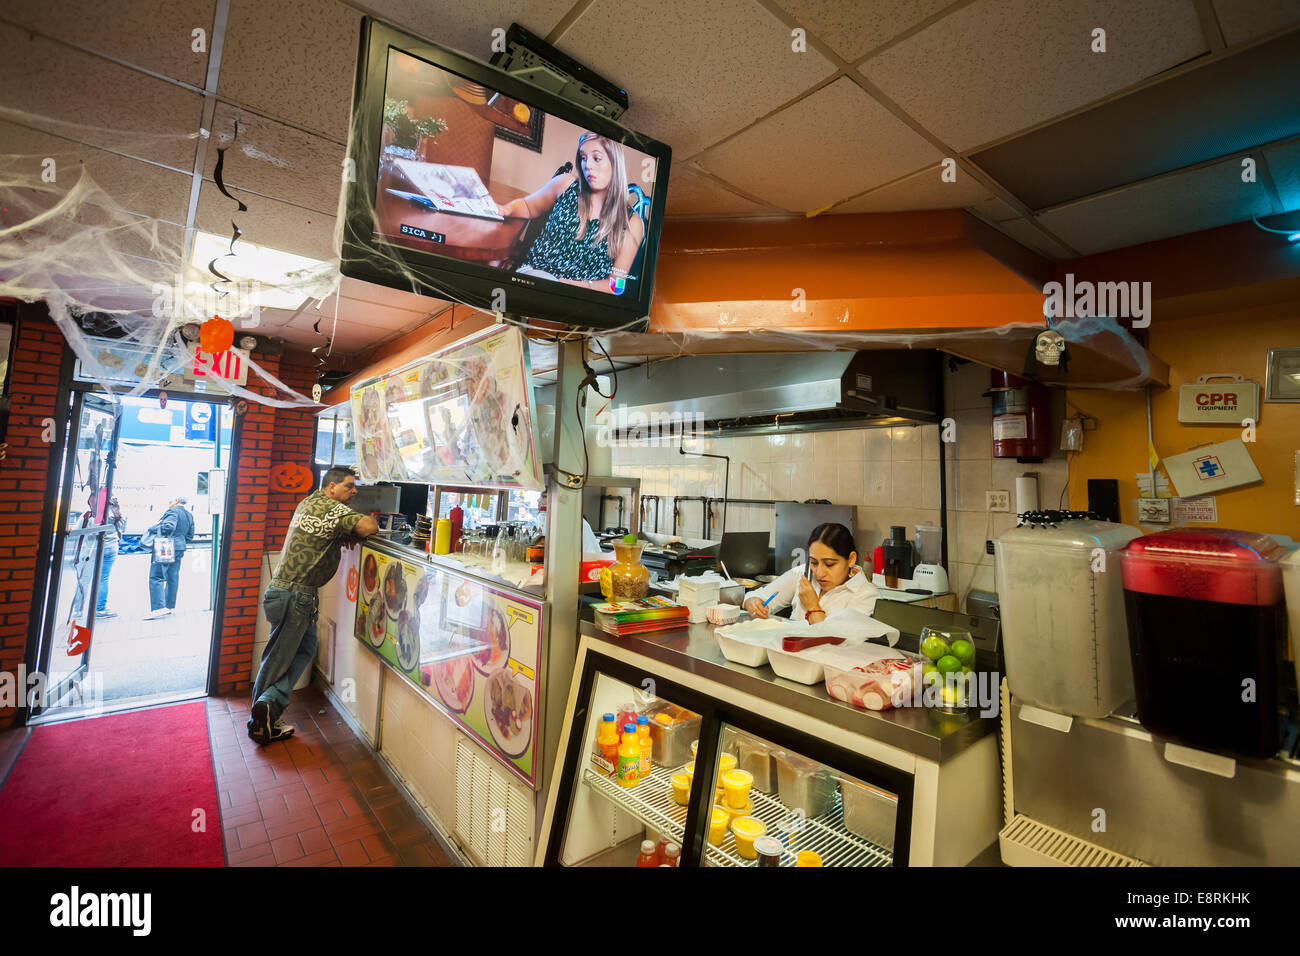 Telenovelas (Ispanico telenovelas) riprodurre sul televisore in un ristorante ispanica nella comunità di Jackson Heights Foto Stock